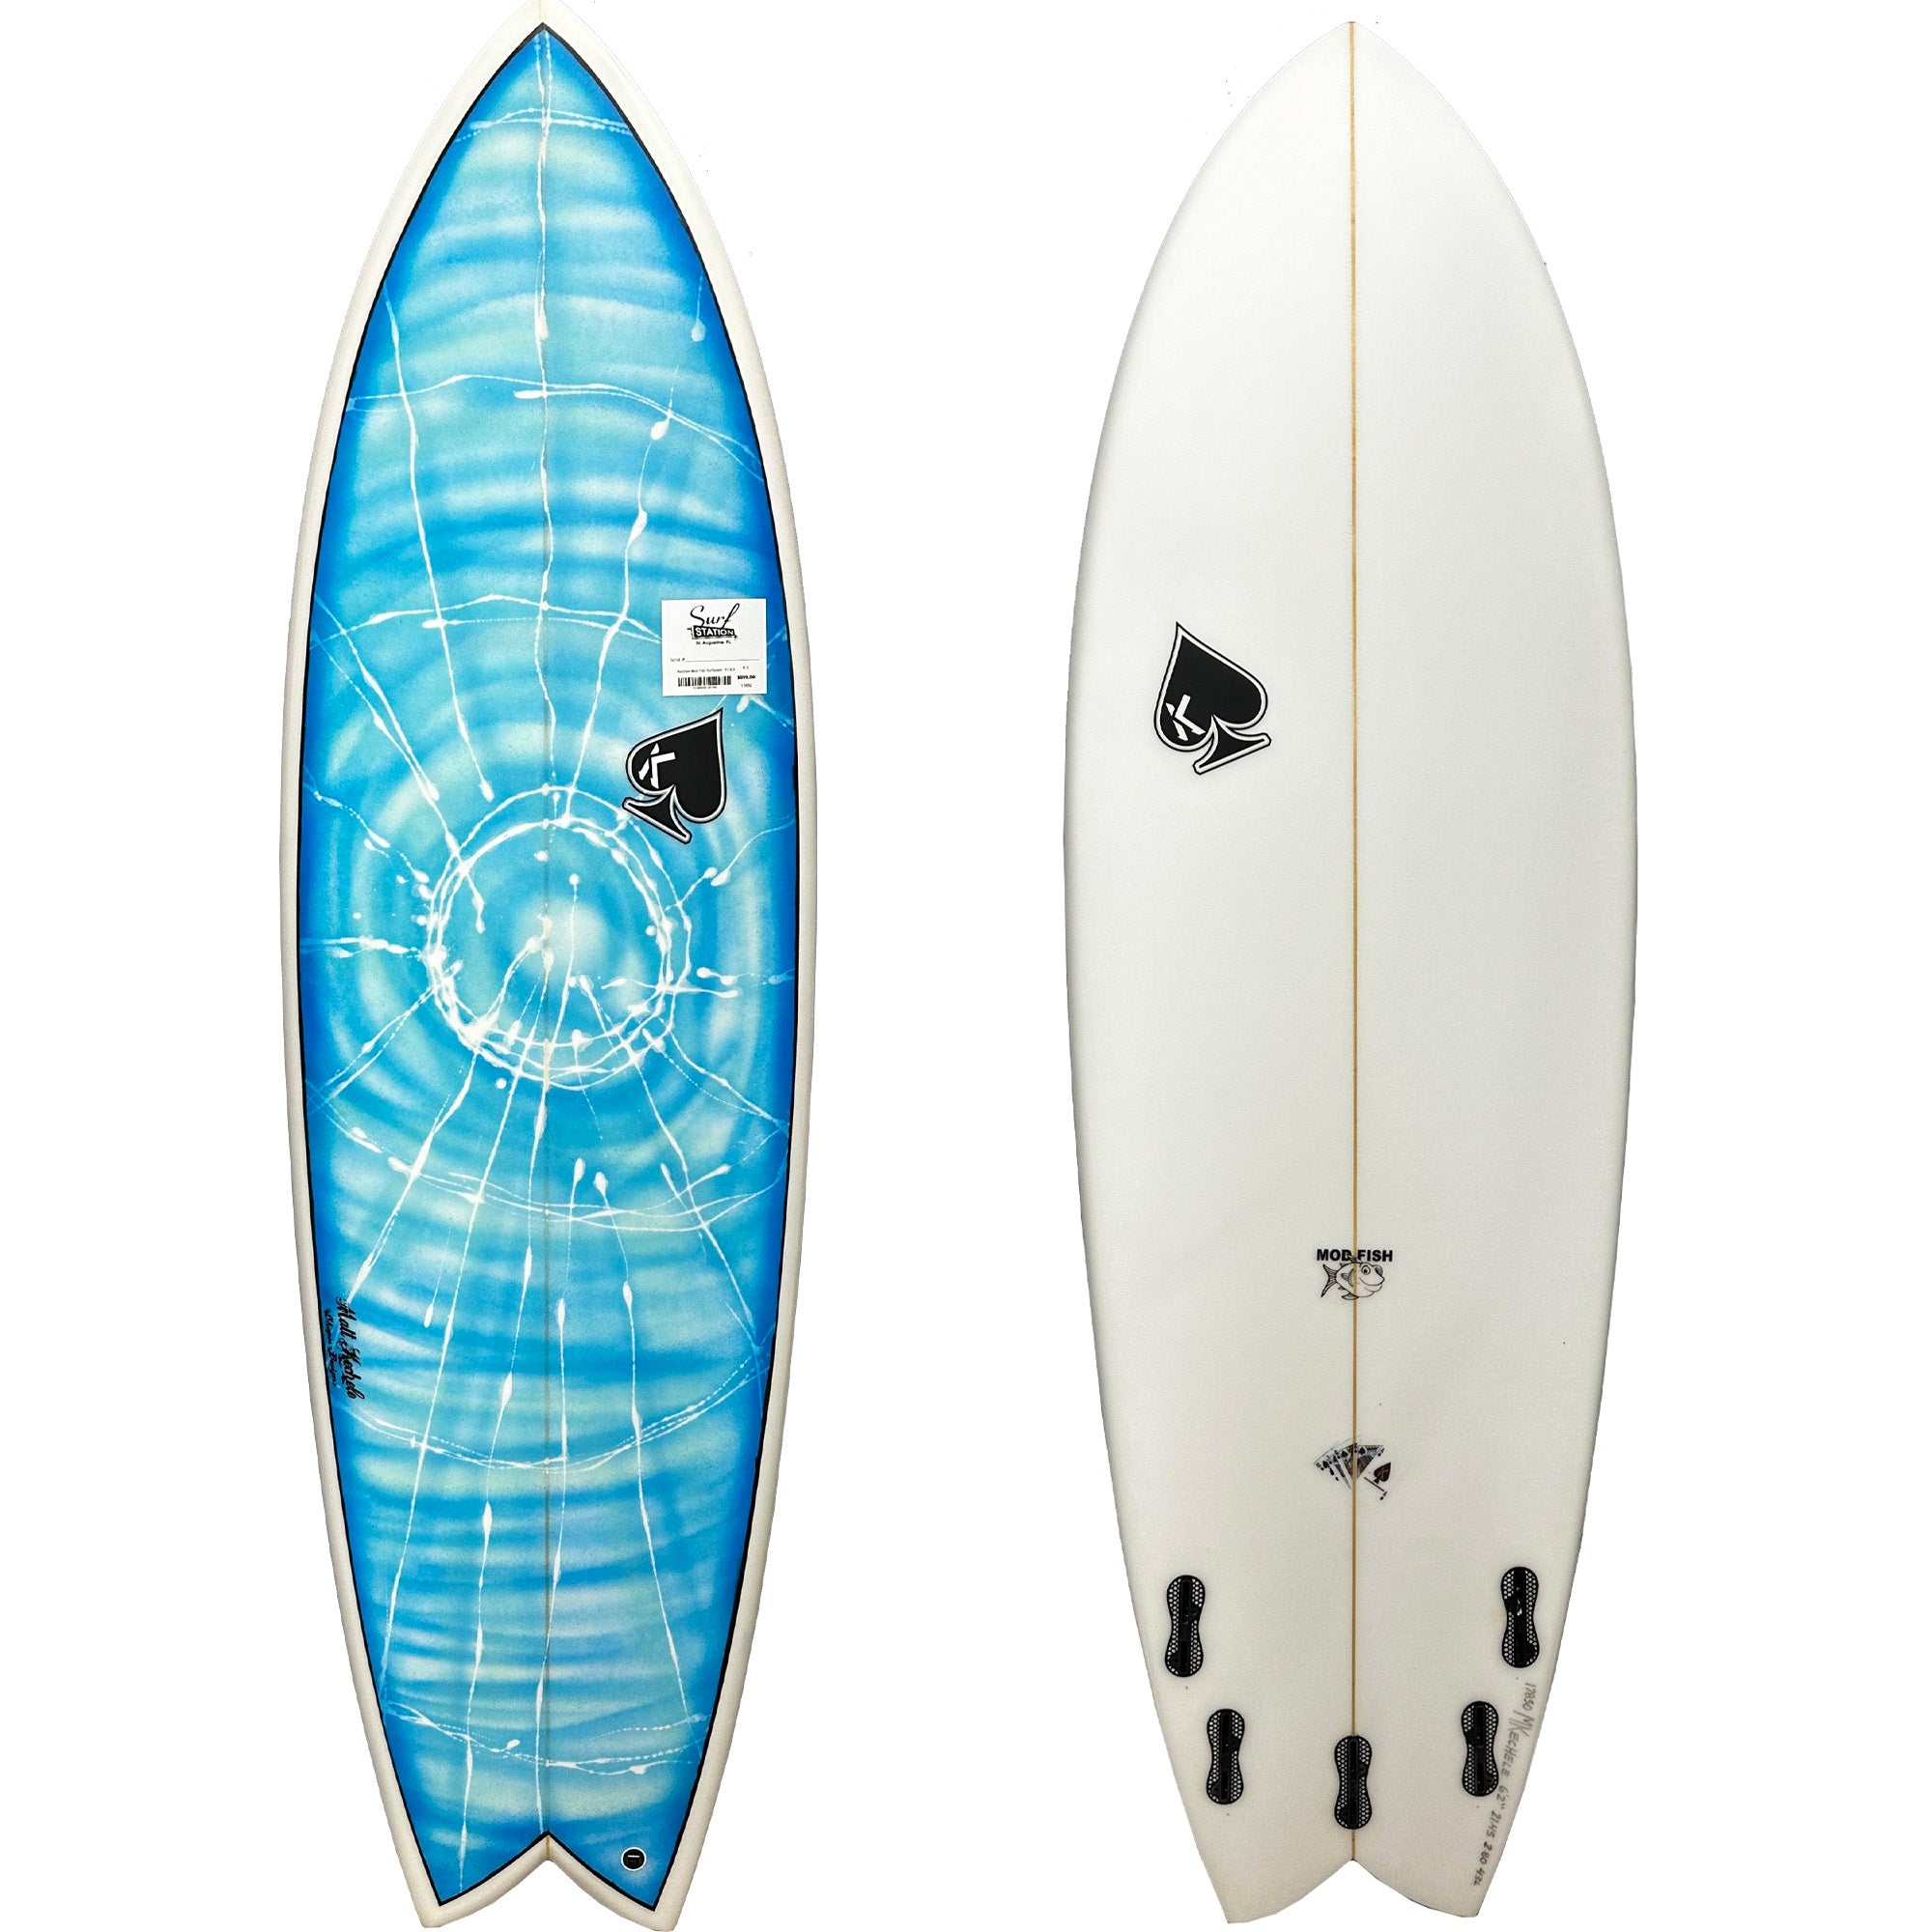 Kechele Mod Fish Surfboard - FCS II